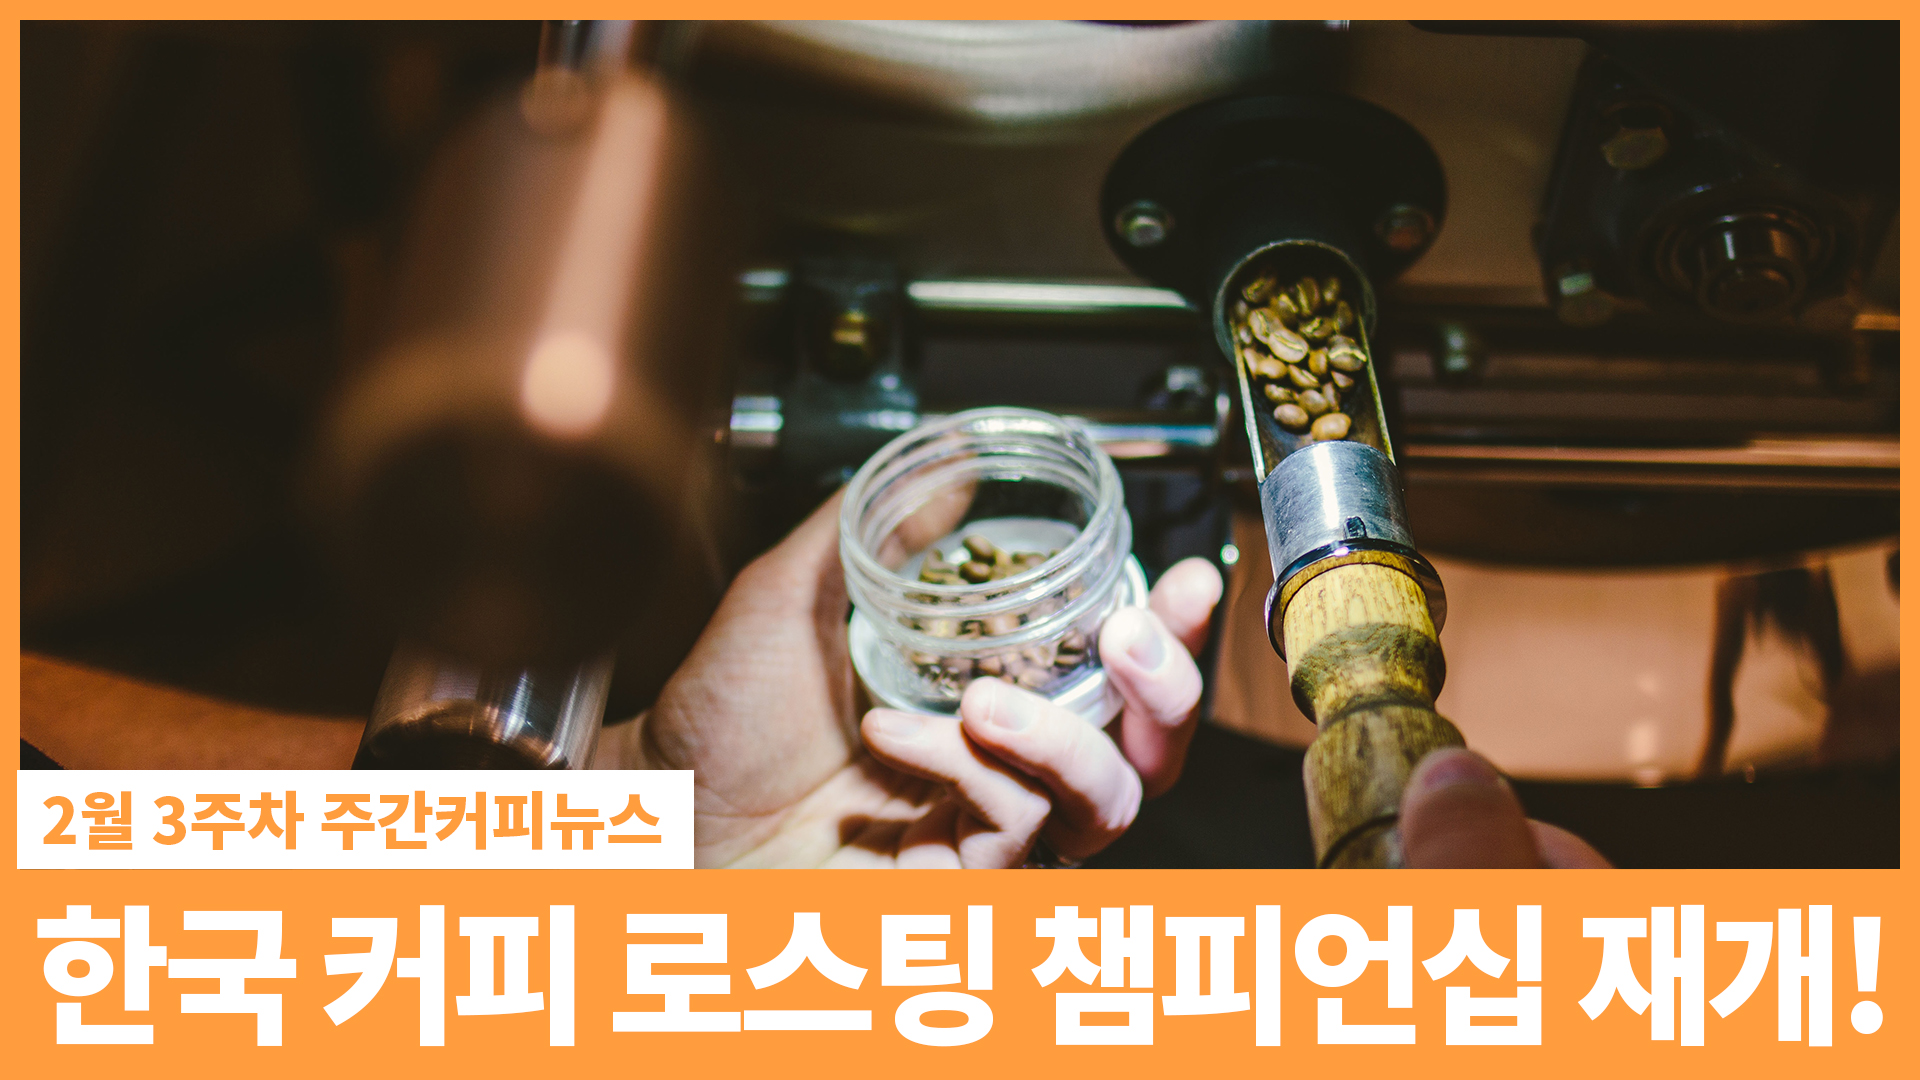 다시 시작하는 한국 커피 챔피언십! / 2월 3주 주간커피뉴스, 커피TV